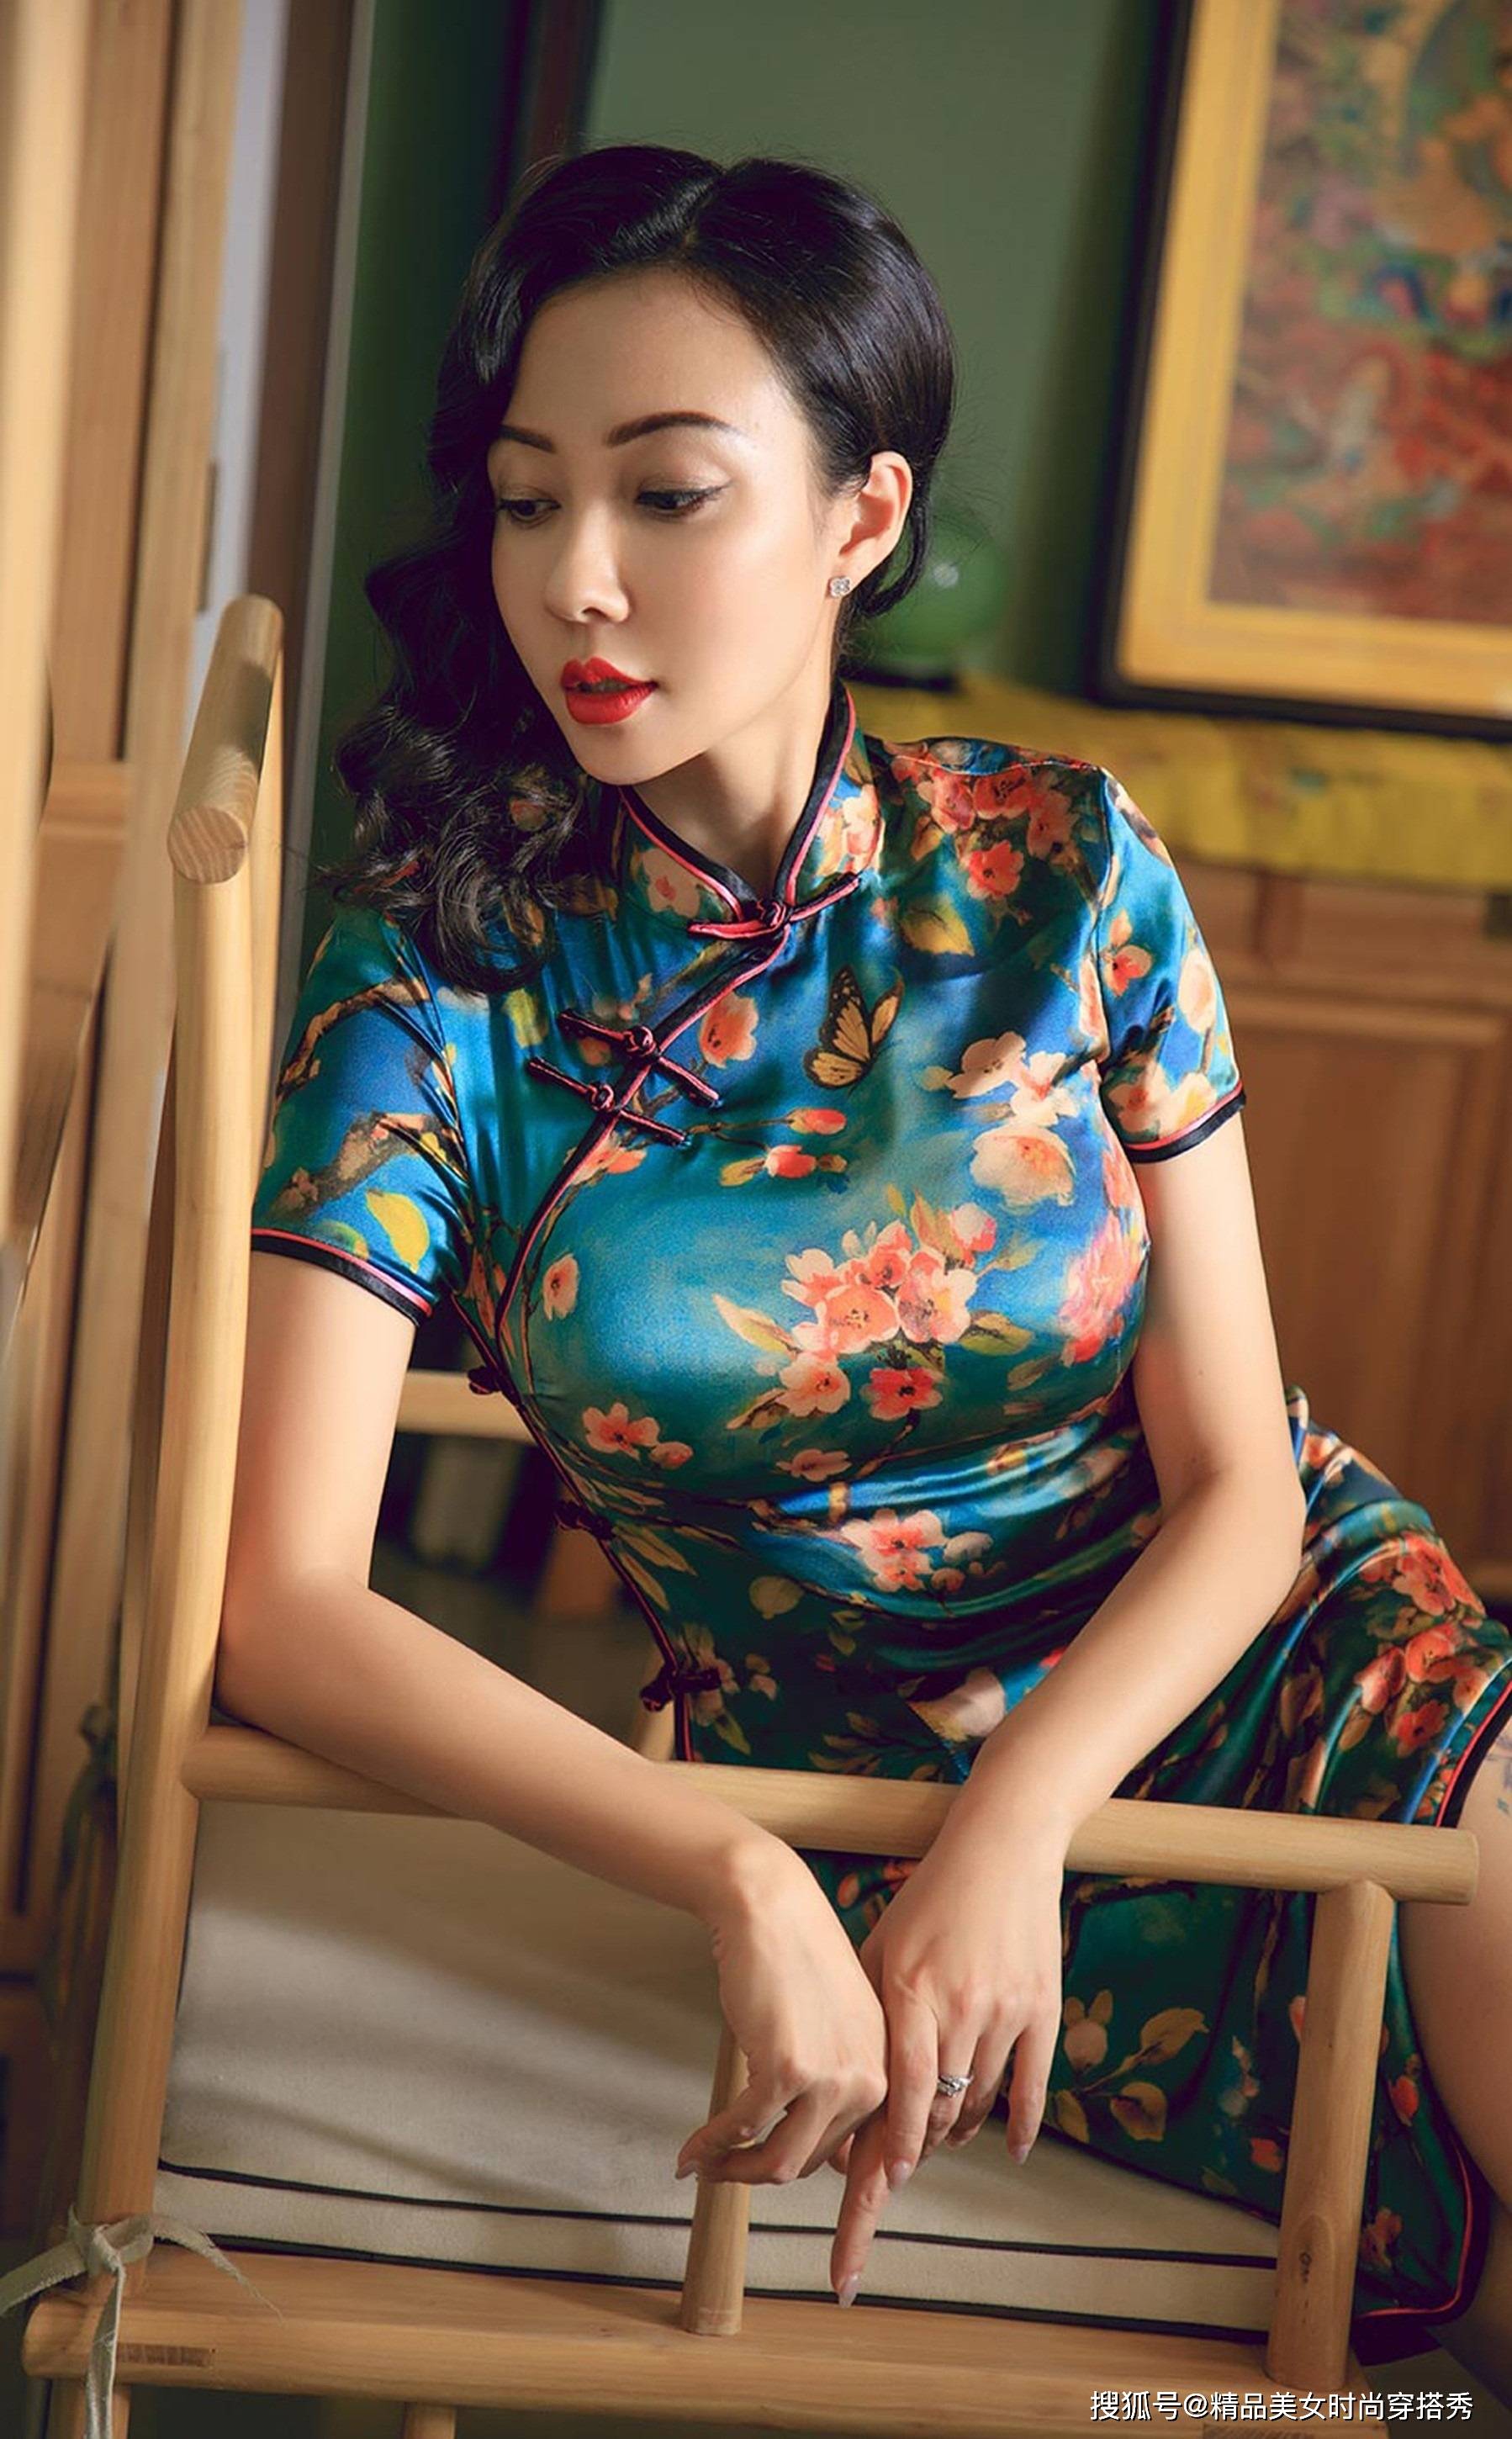 旗袍,这种极具东方韵味的服饰,一直以来都是华夏民族传统文化的瑰宝